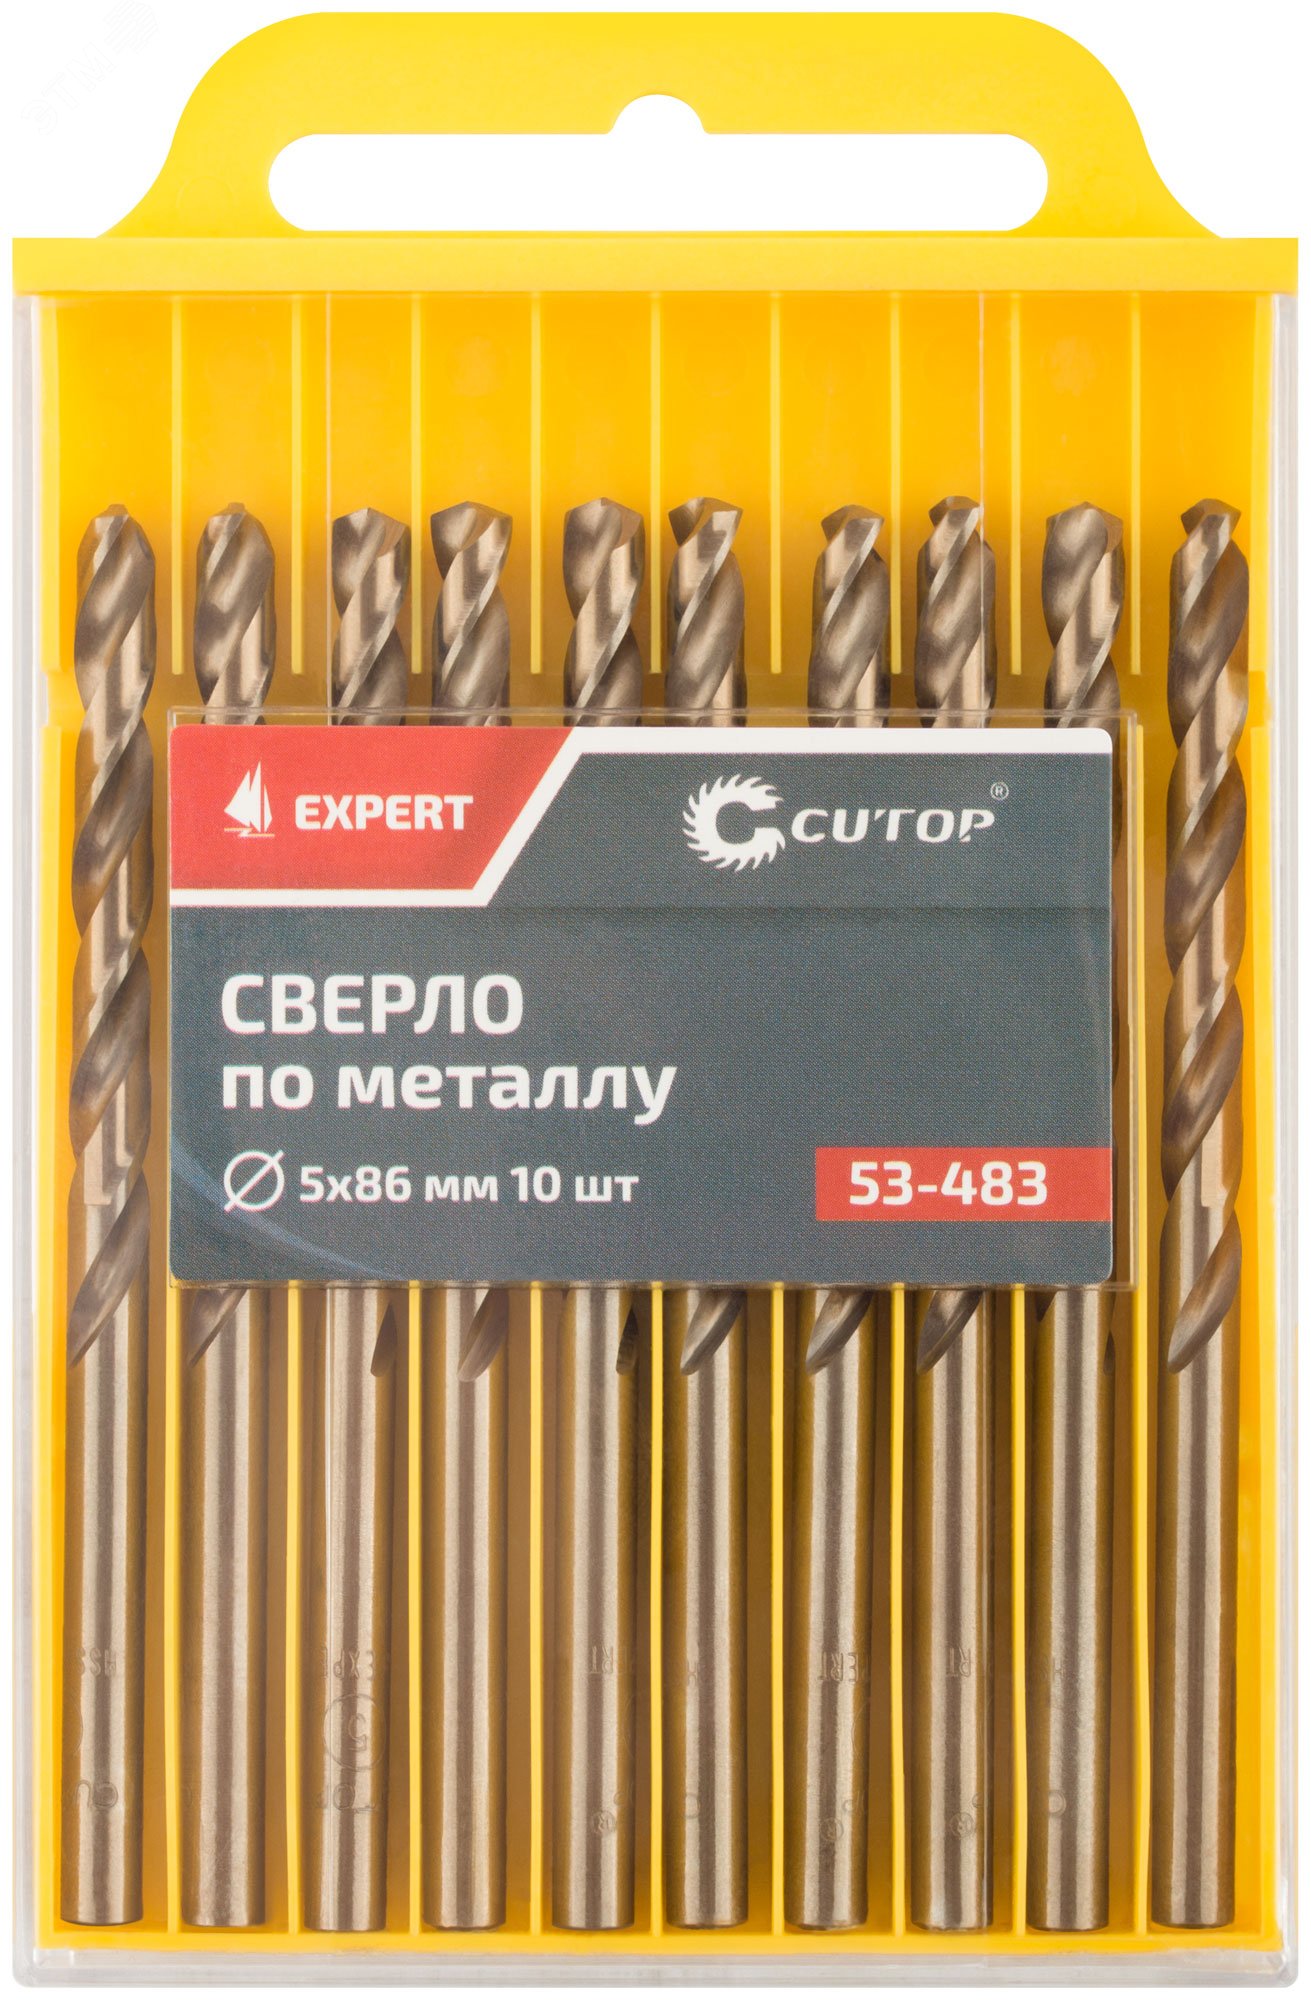 Сверло по металлу Cutop EXPERT, 5х86 мм (10 шт) 53-483 CUTOP - превью 3